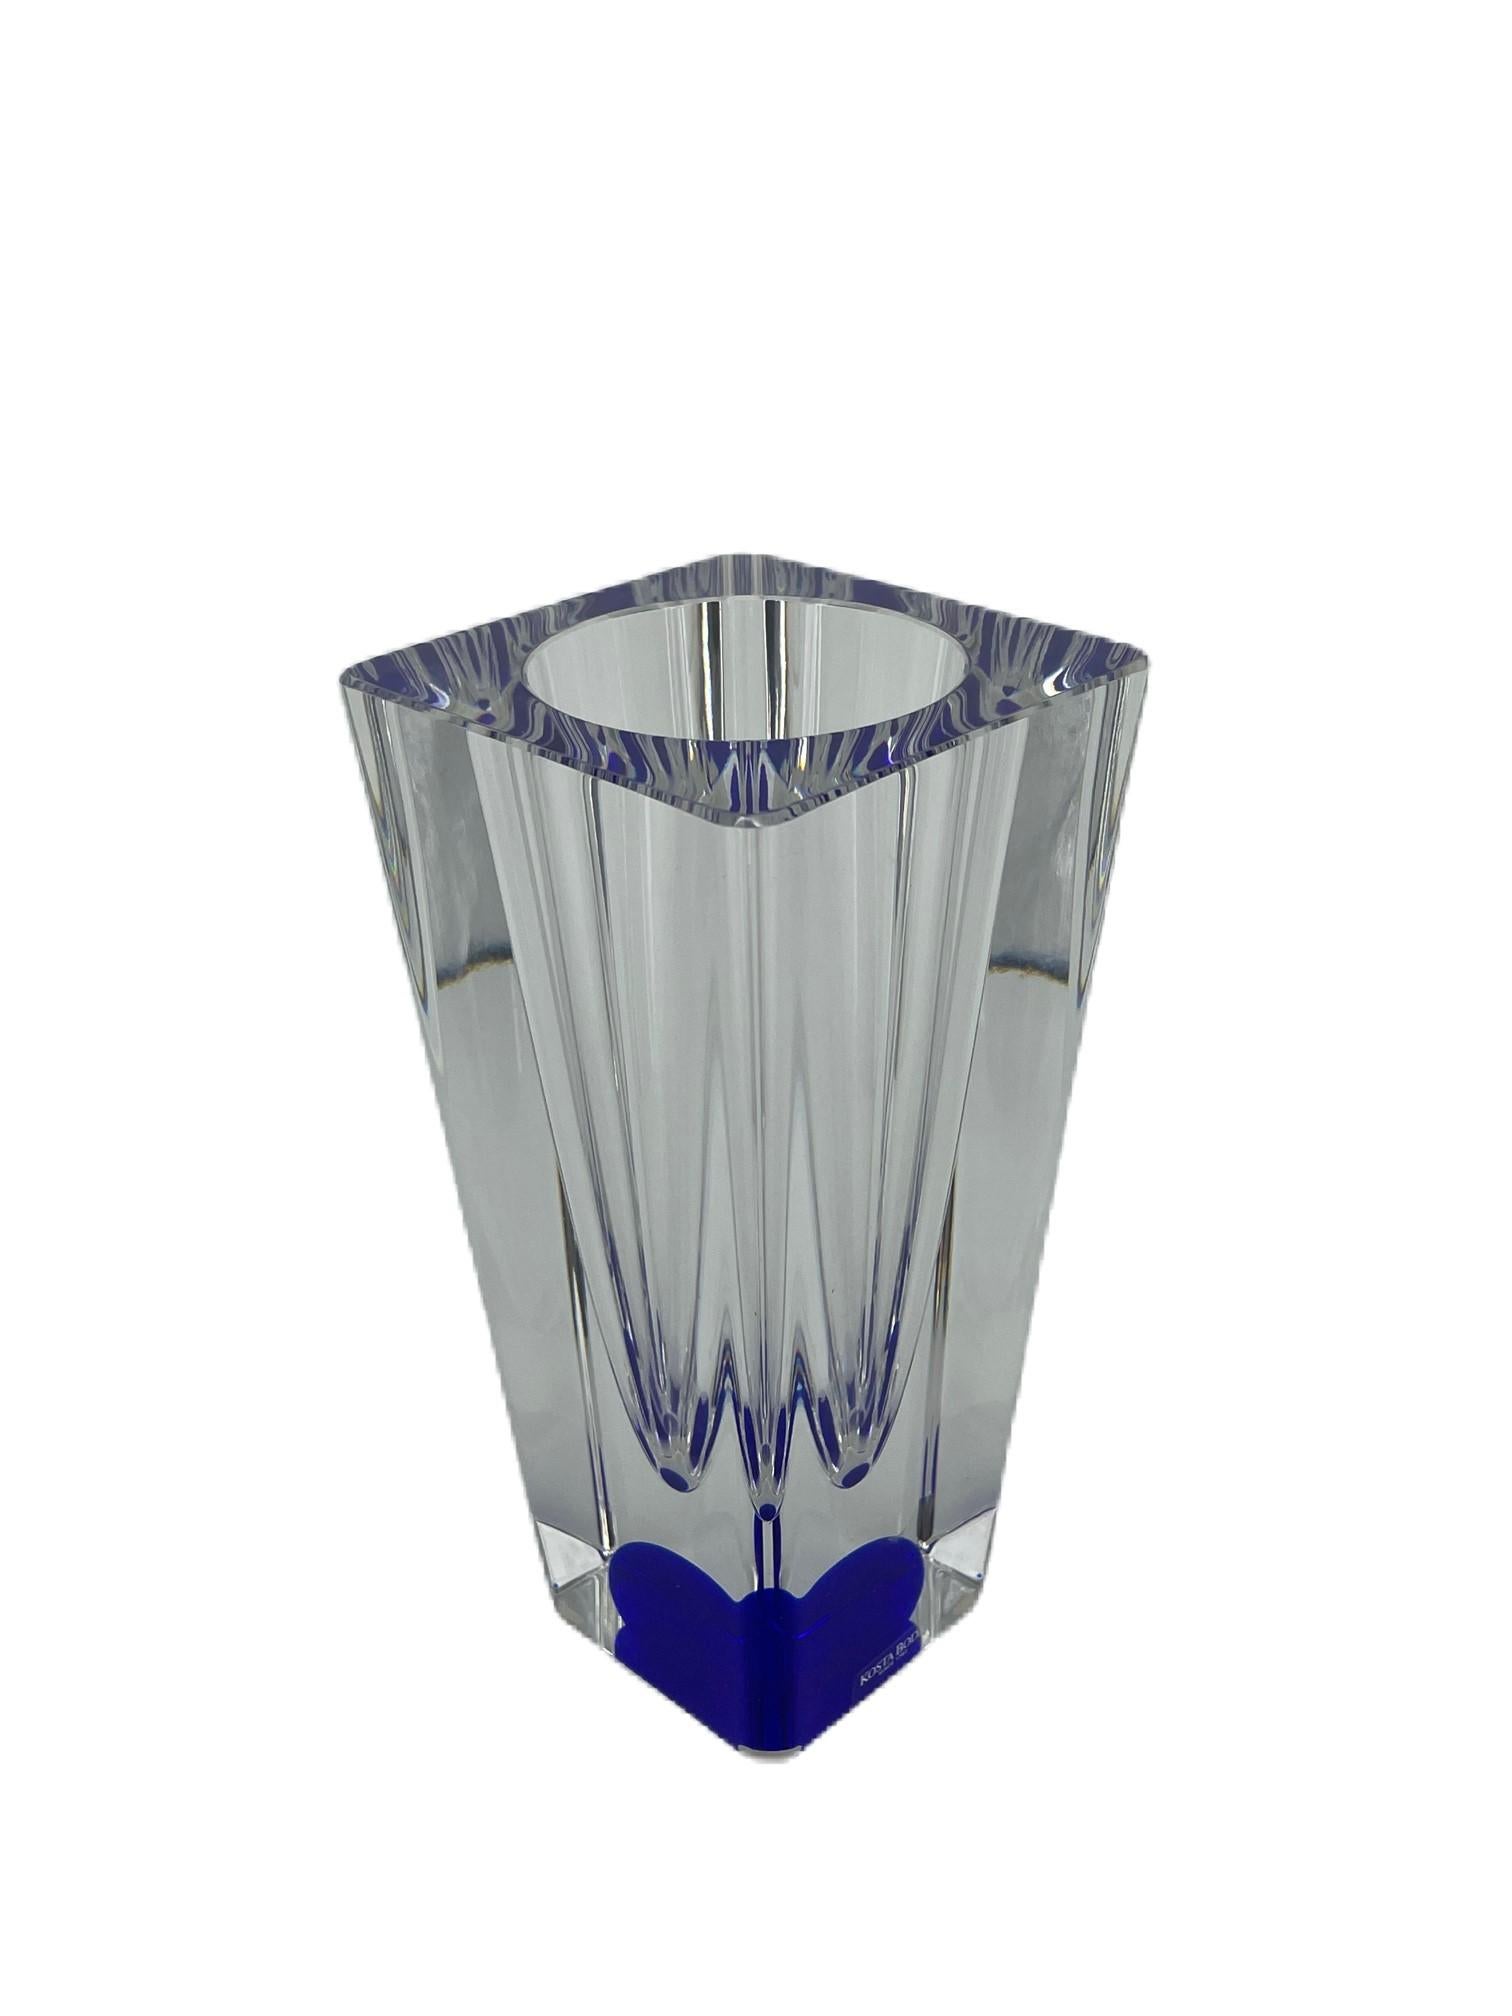 Kosta Boda par Bertil Vallien. Très beau vase, unique et rare.
Vase en verre d'art transparent avec une boule cobalt à l'intérieur du vase.

Bertil Vallien
allien est le fils du peintre et prédicateur Nils Wallin (1911-1987) et d'Astrid, née